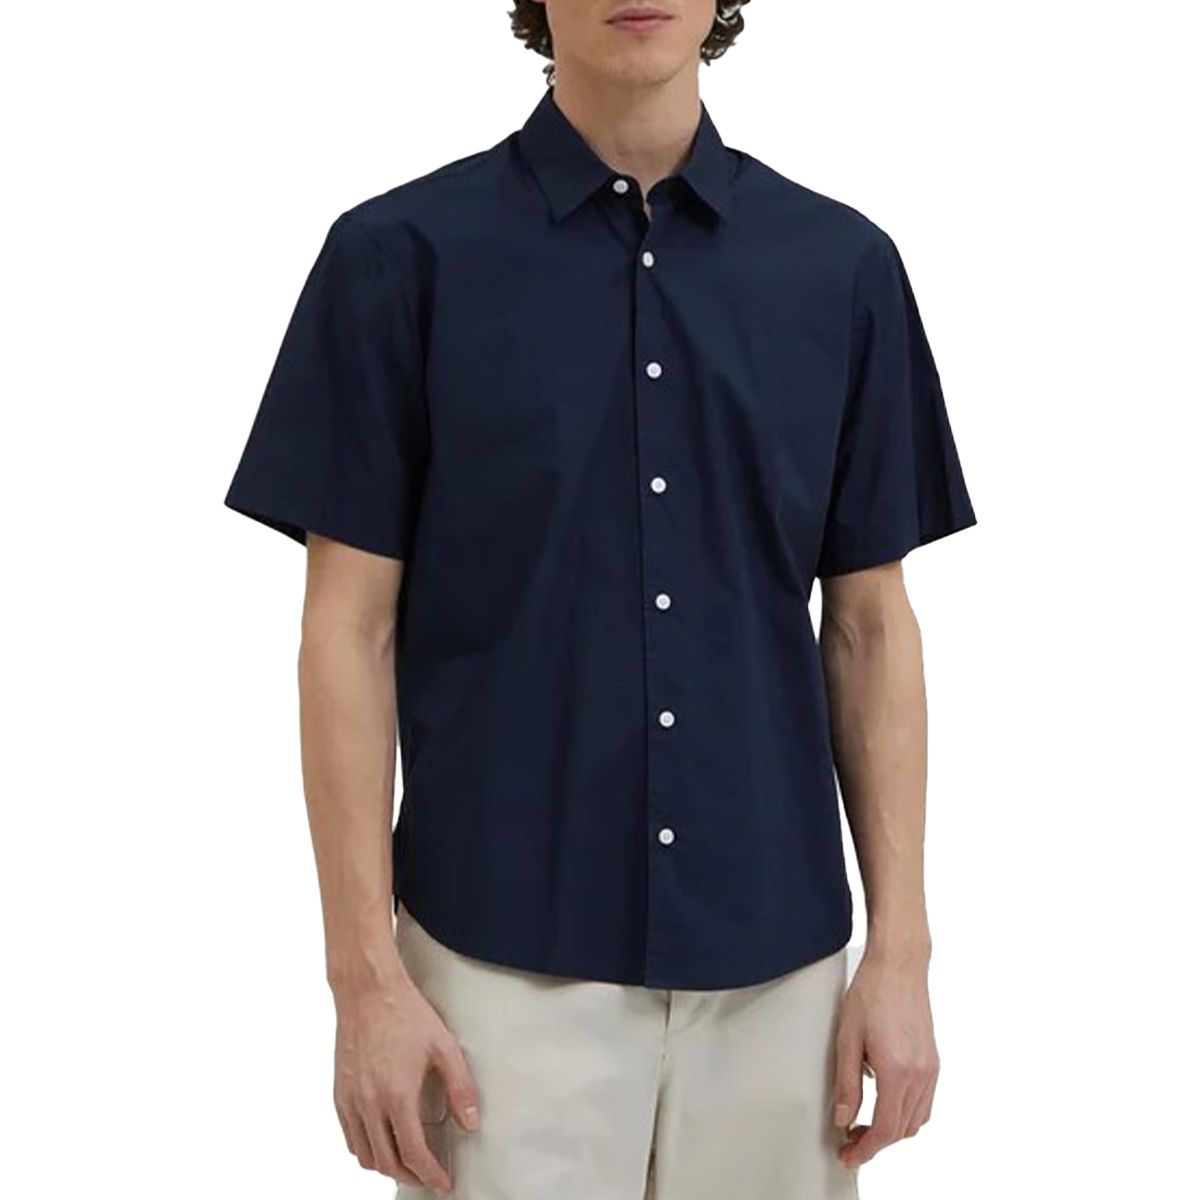 Navy Short Sleeved Shirt